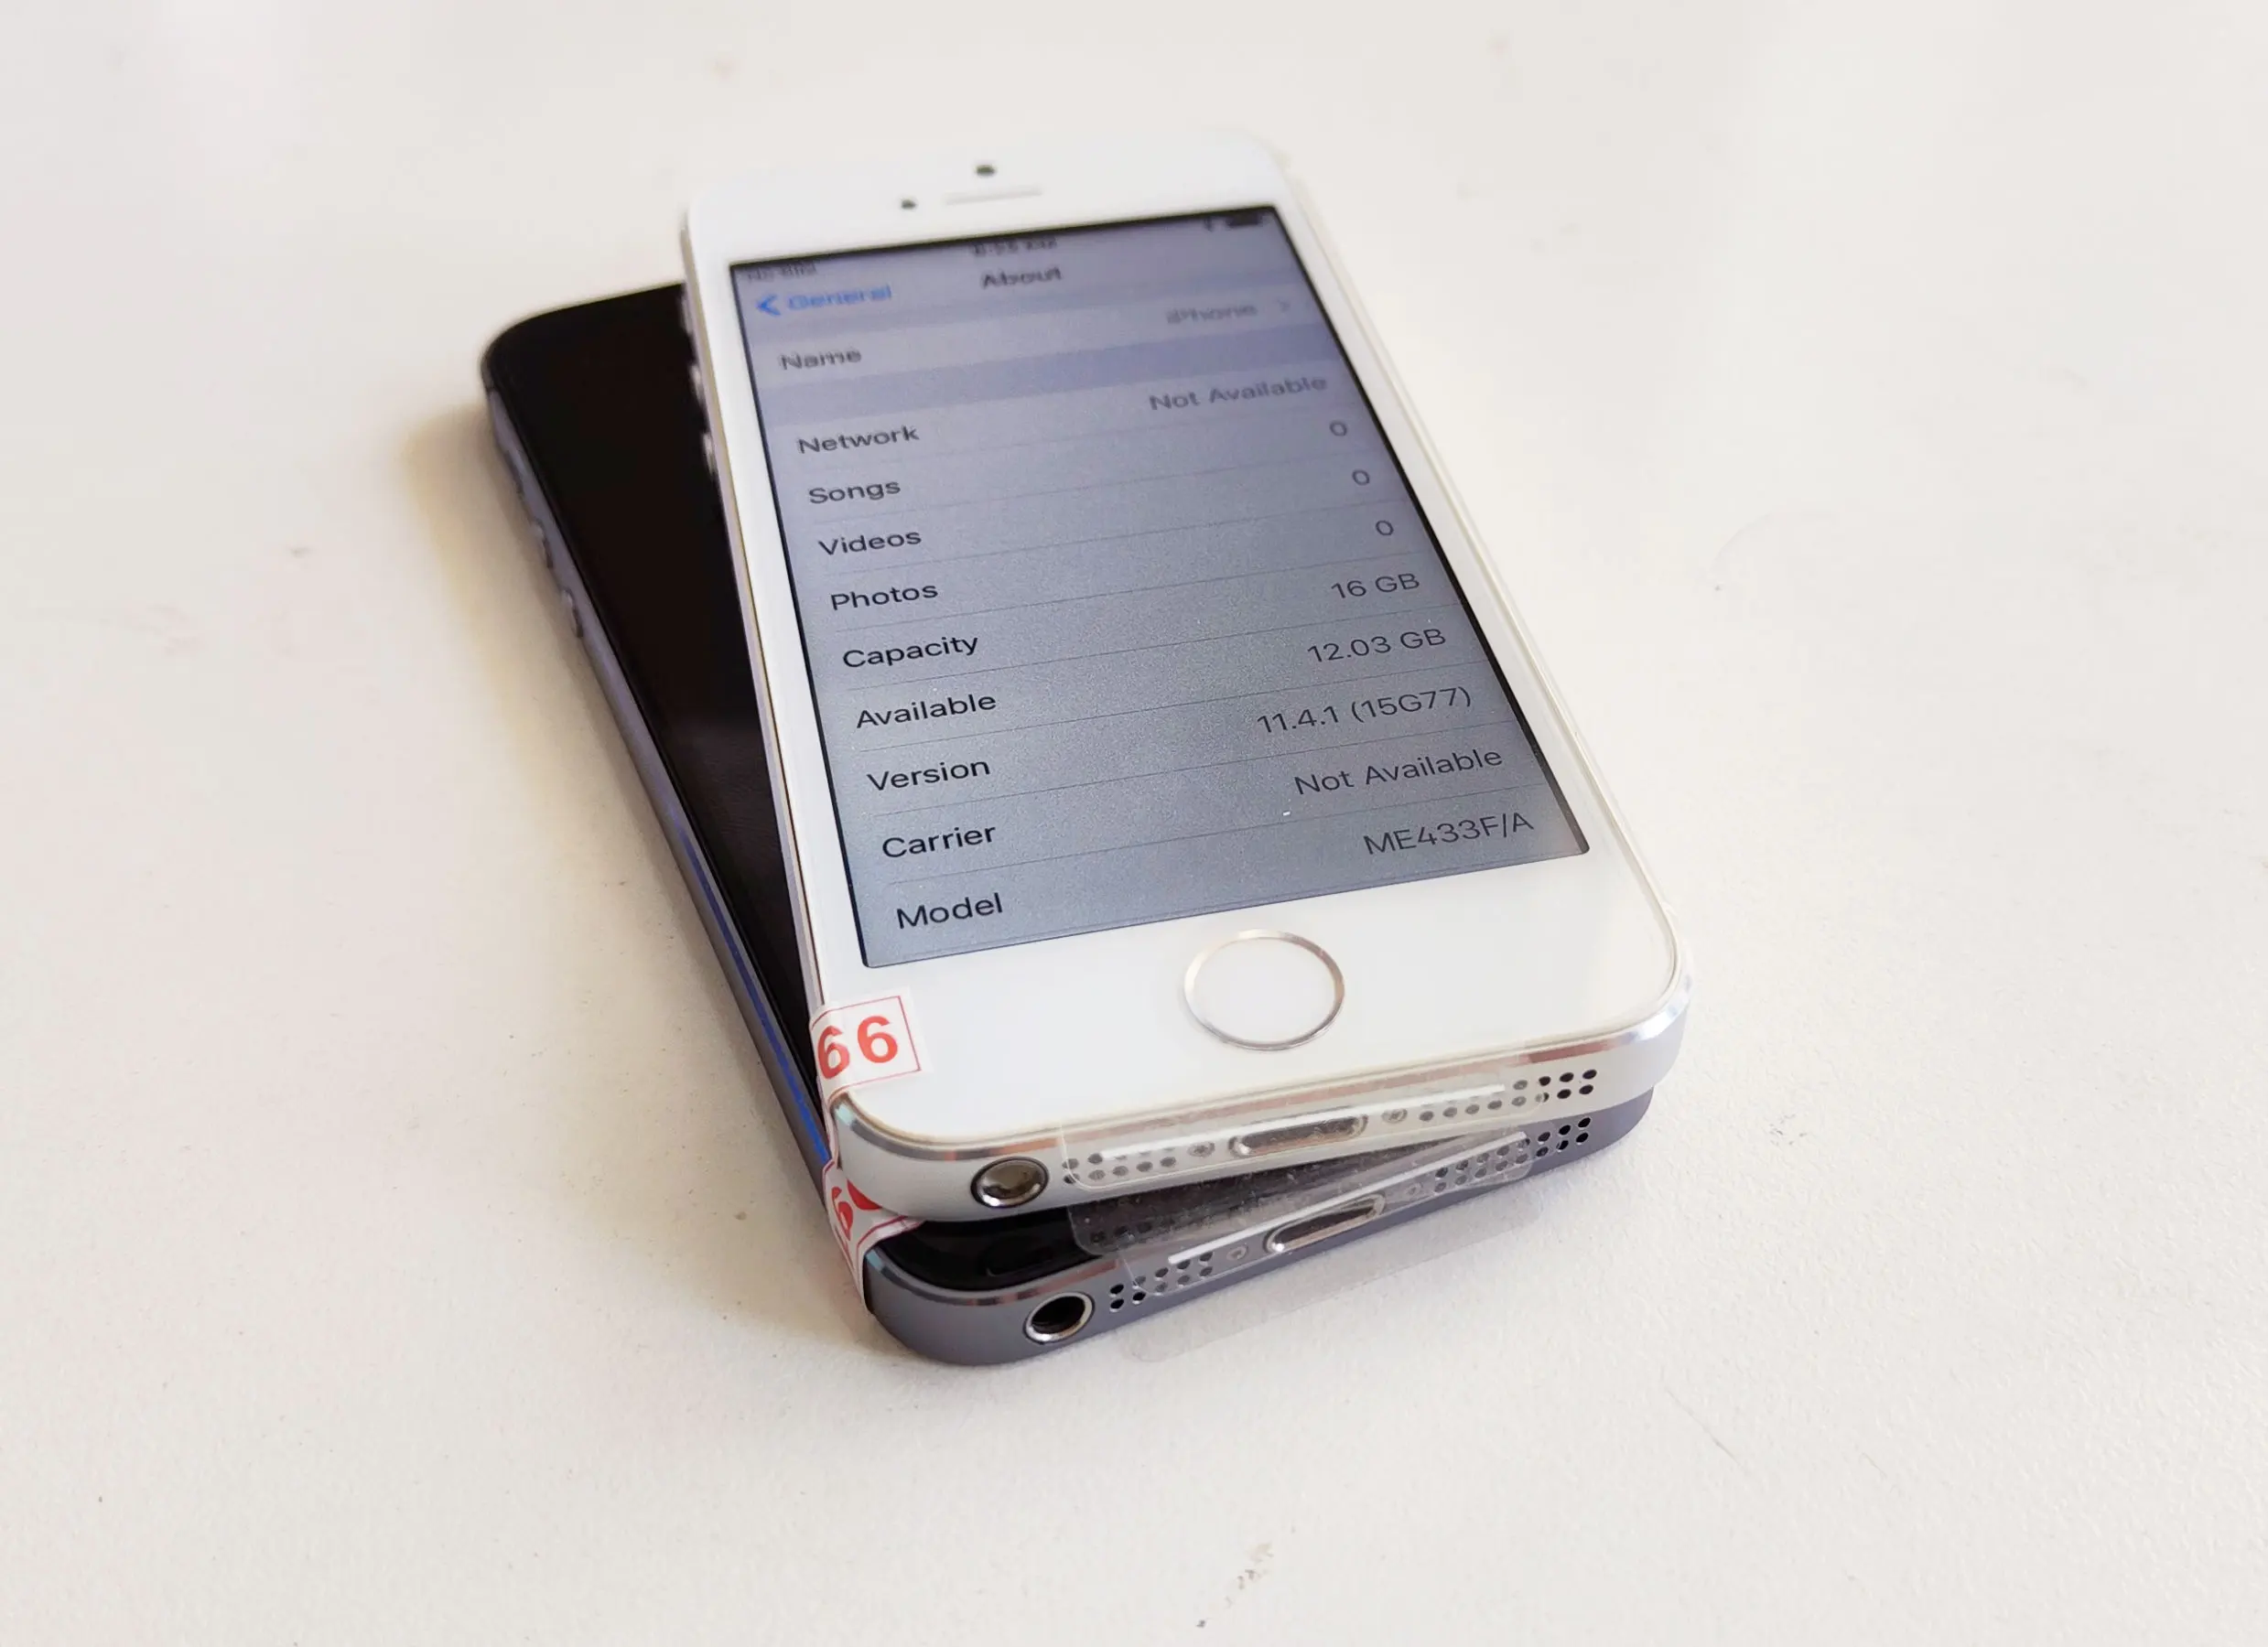 Used Apple iPhone 5 16GB, Black - Unlocked GSM